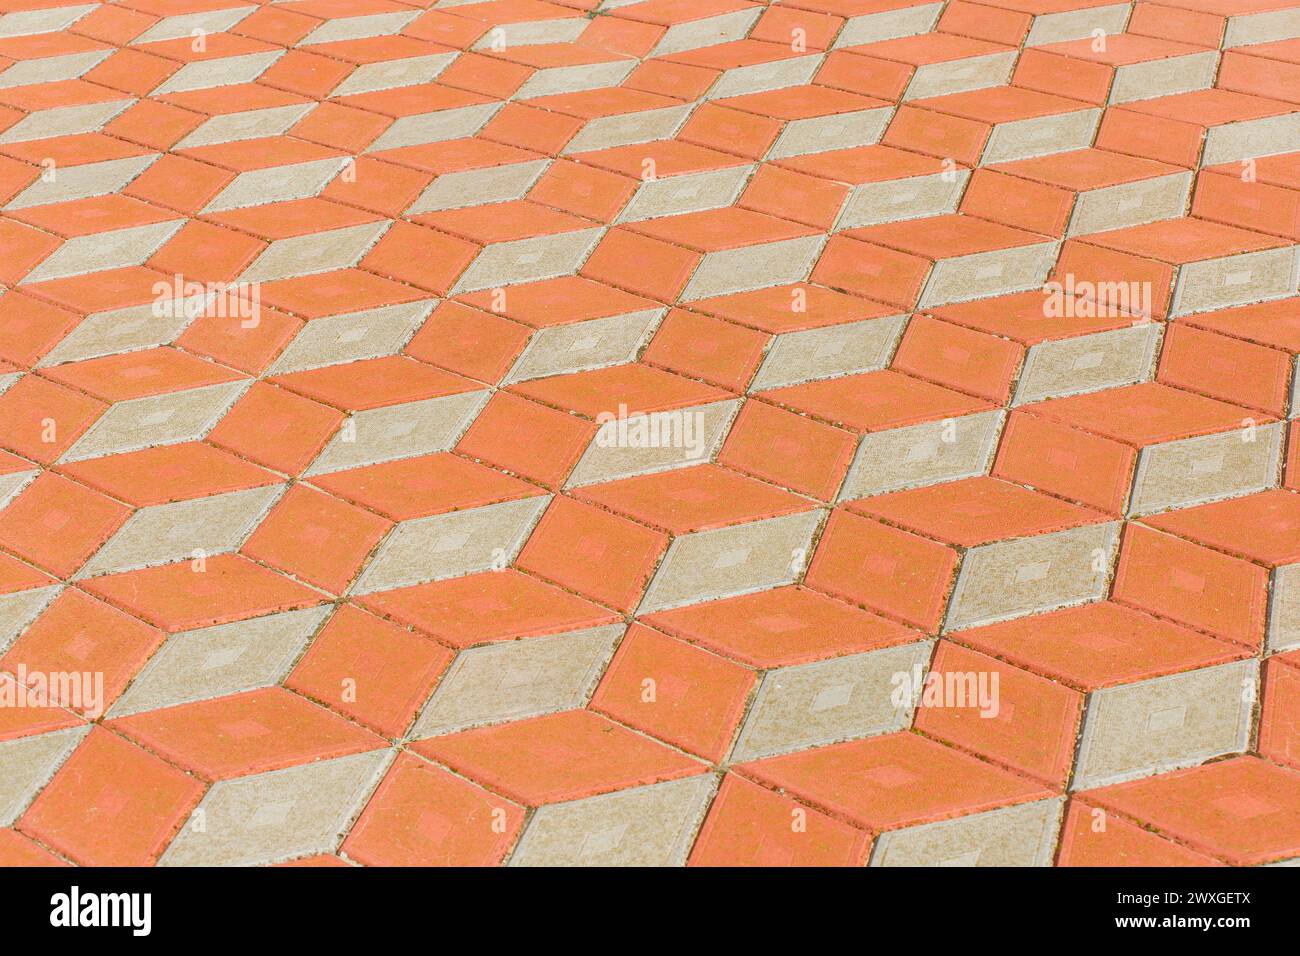 Abstraktes Muster von orange und hellen Pflasterfliesen Straßenoberfläche Stadttextur Hintergrund. Stockfoto